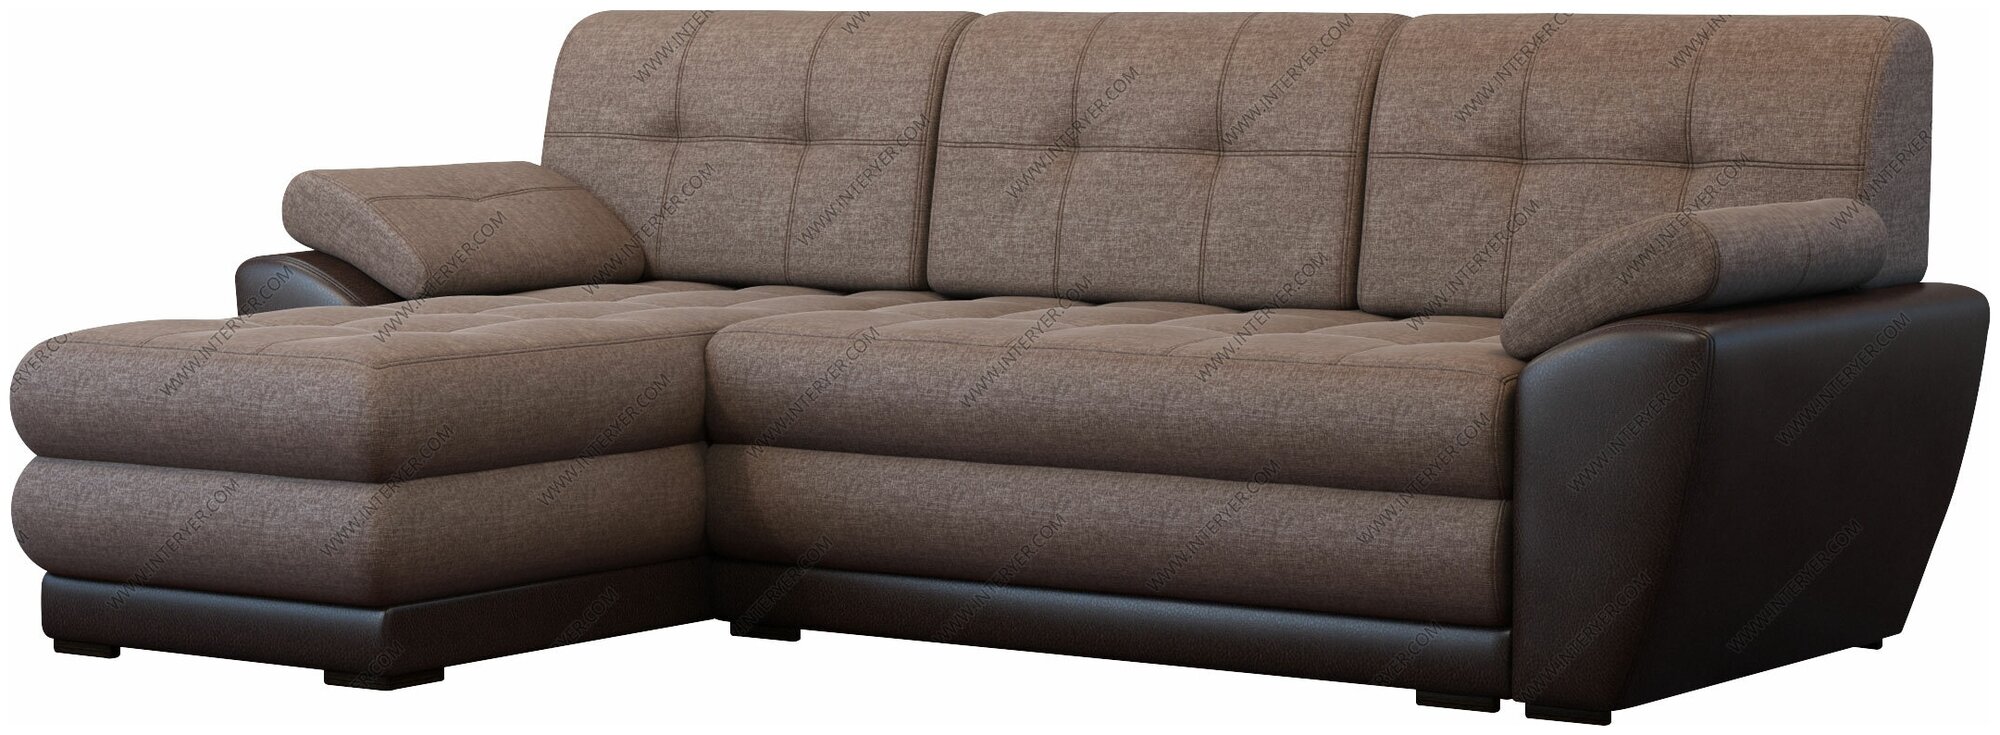 Угловой диван Leticiya А Император-2 (Leticiya) А11 рогожка коричневая